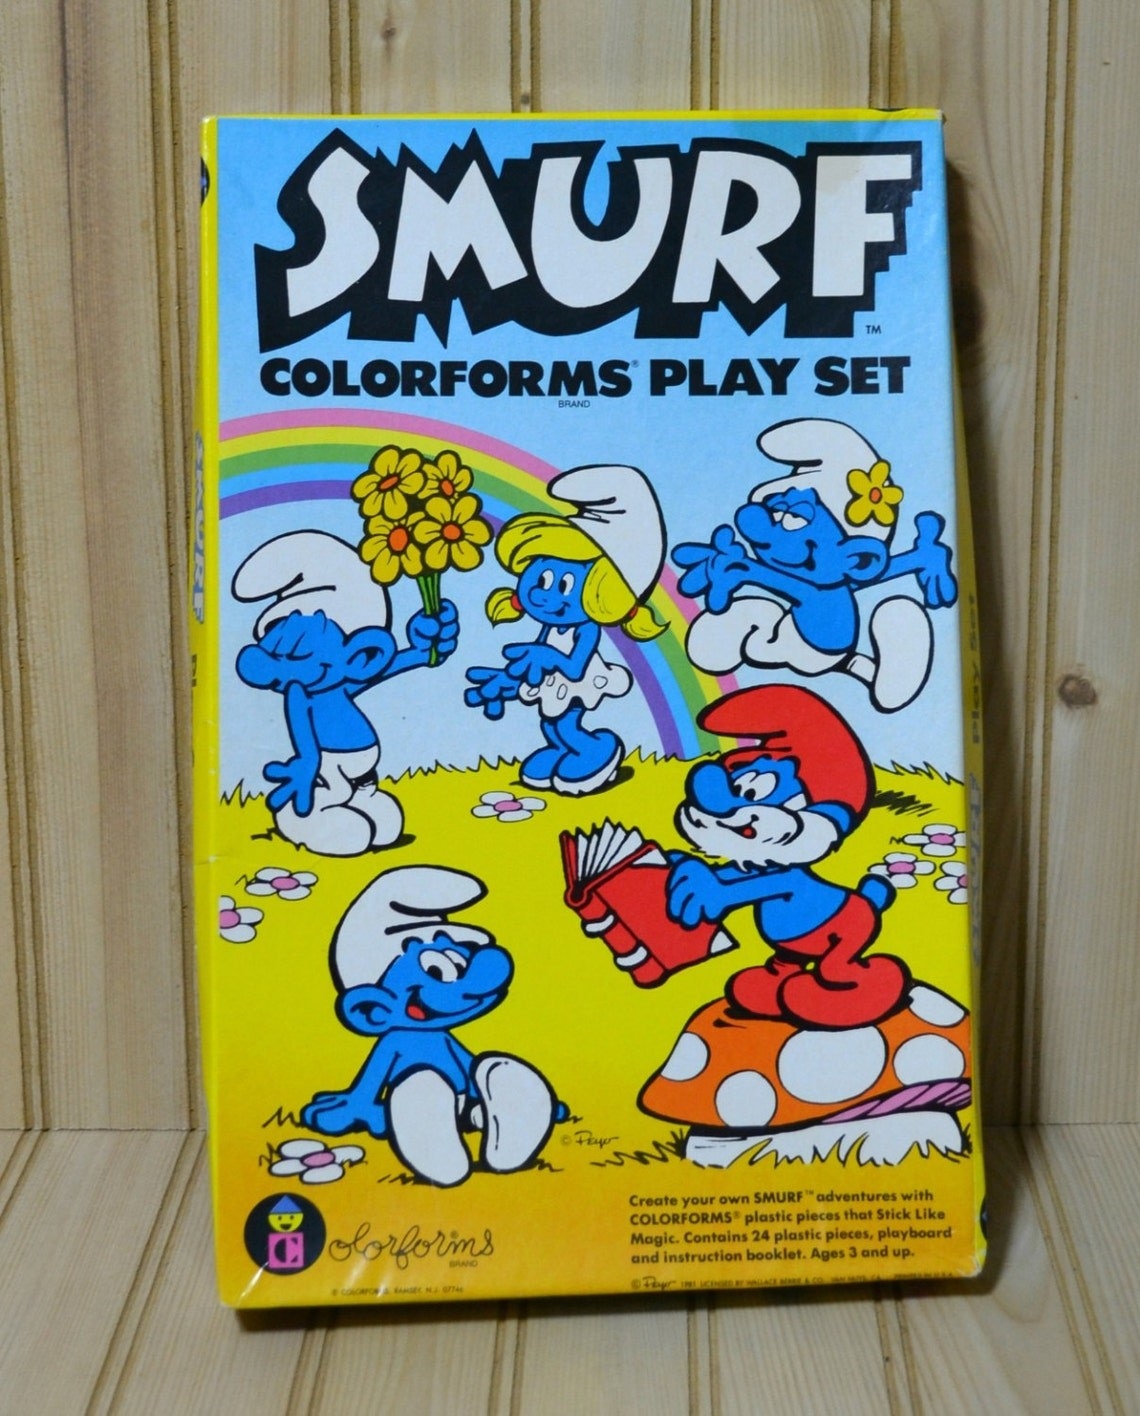 Smurfs Colorforms